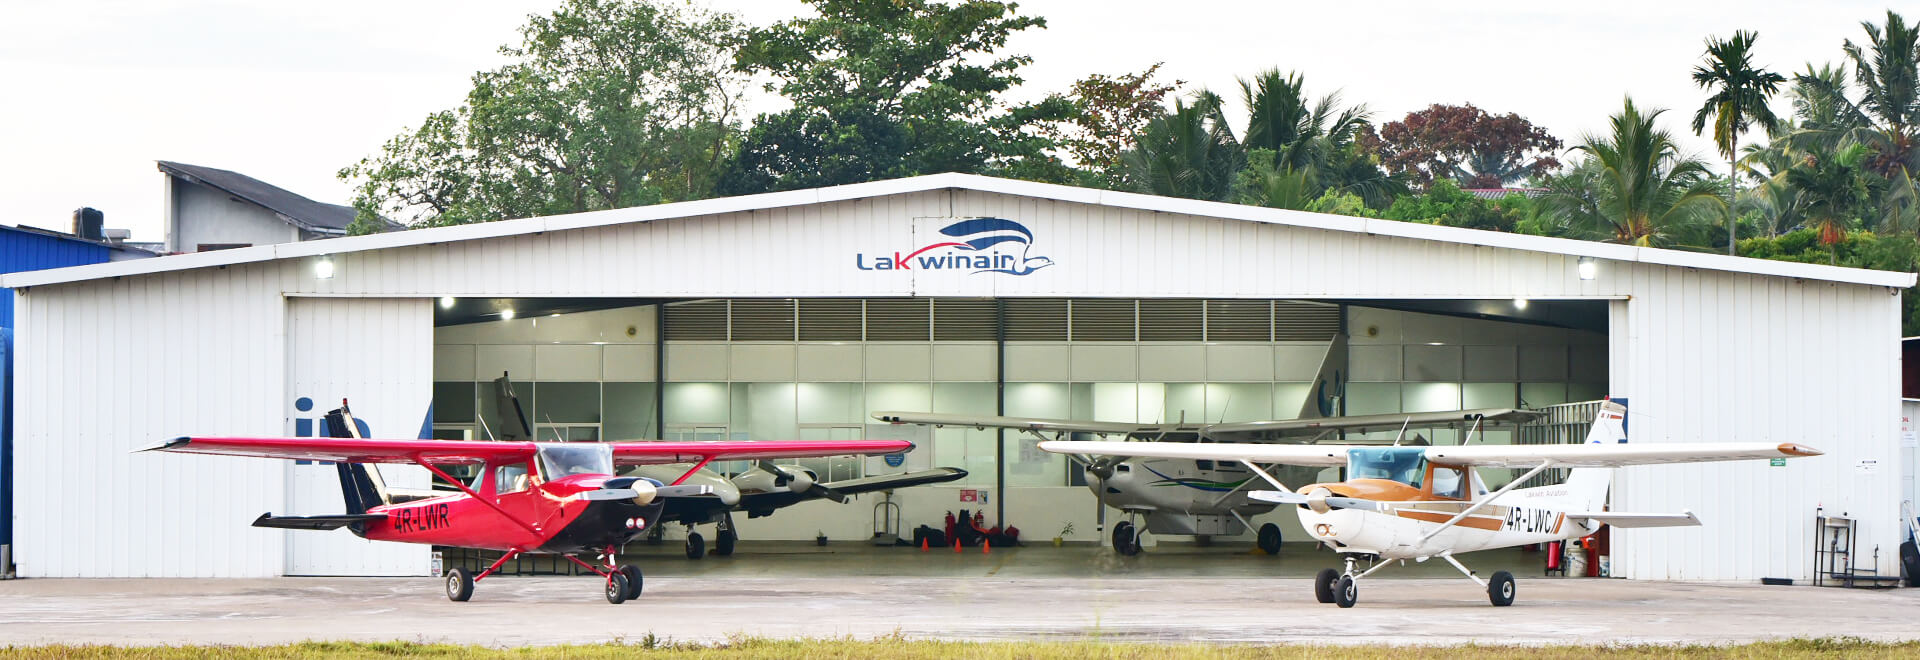 Lakwin Aviation why us image